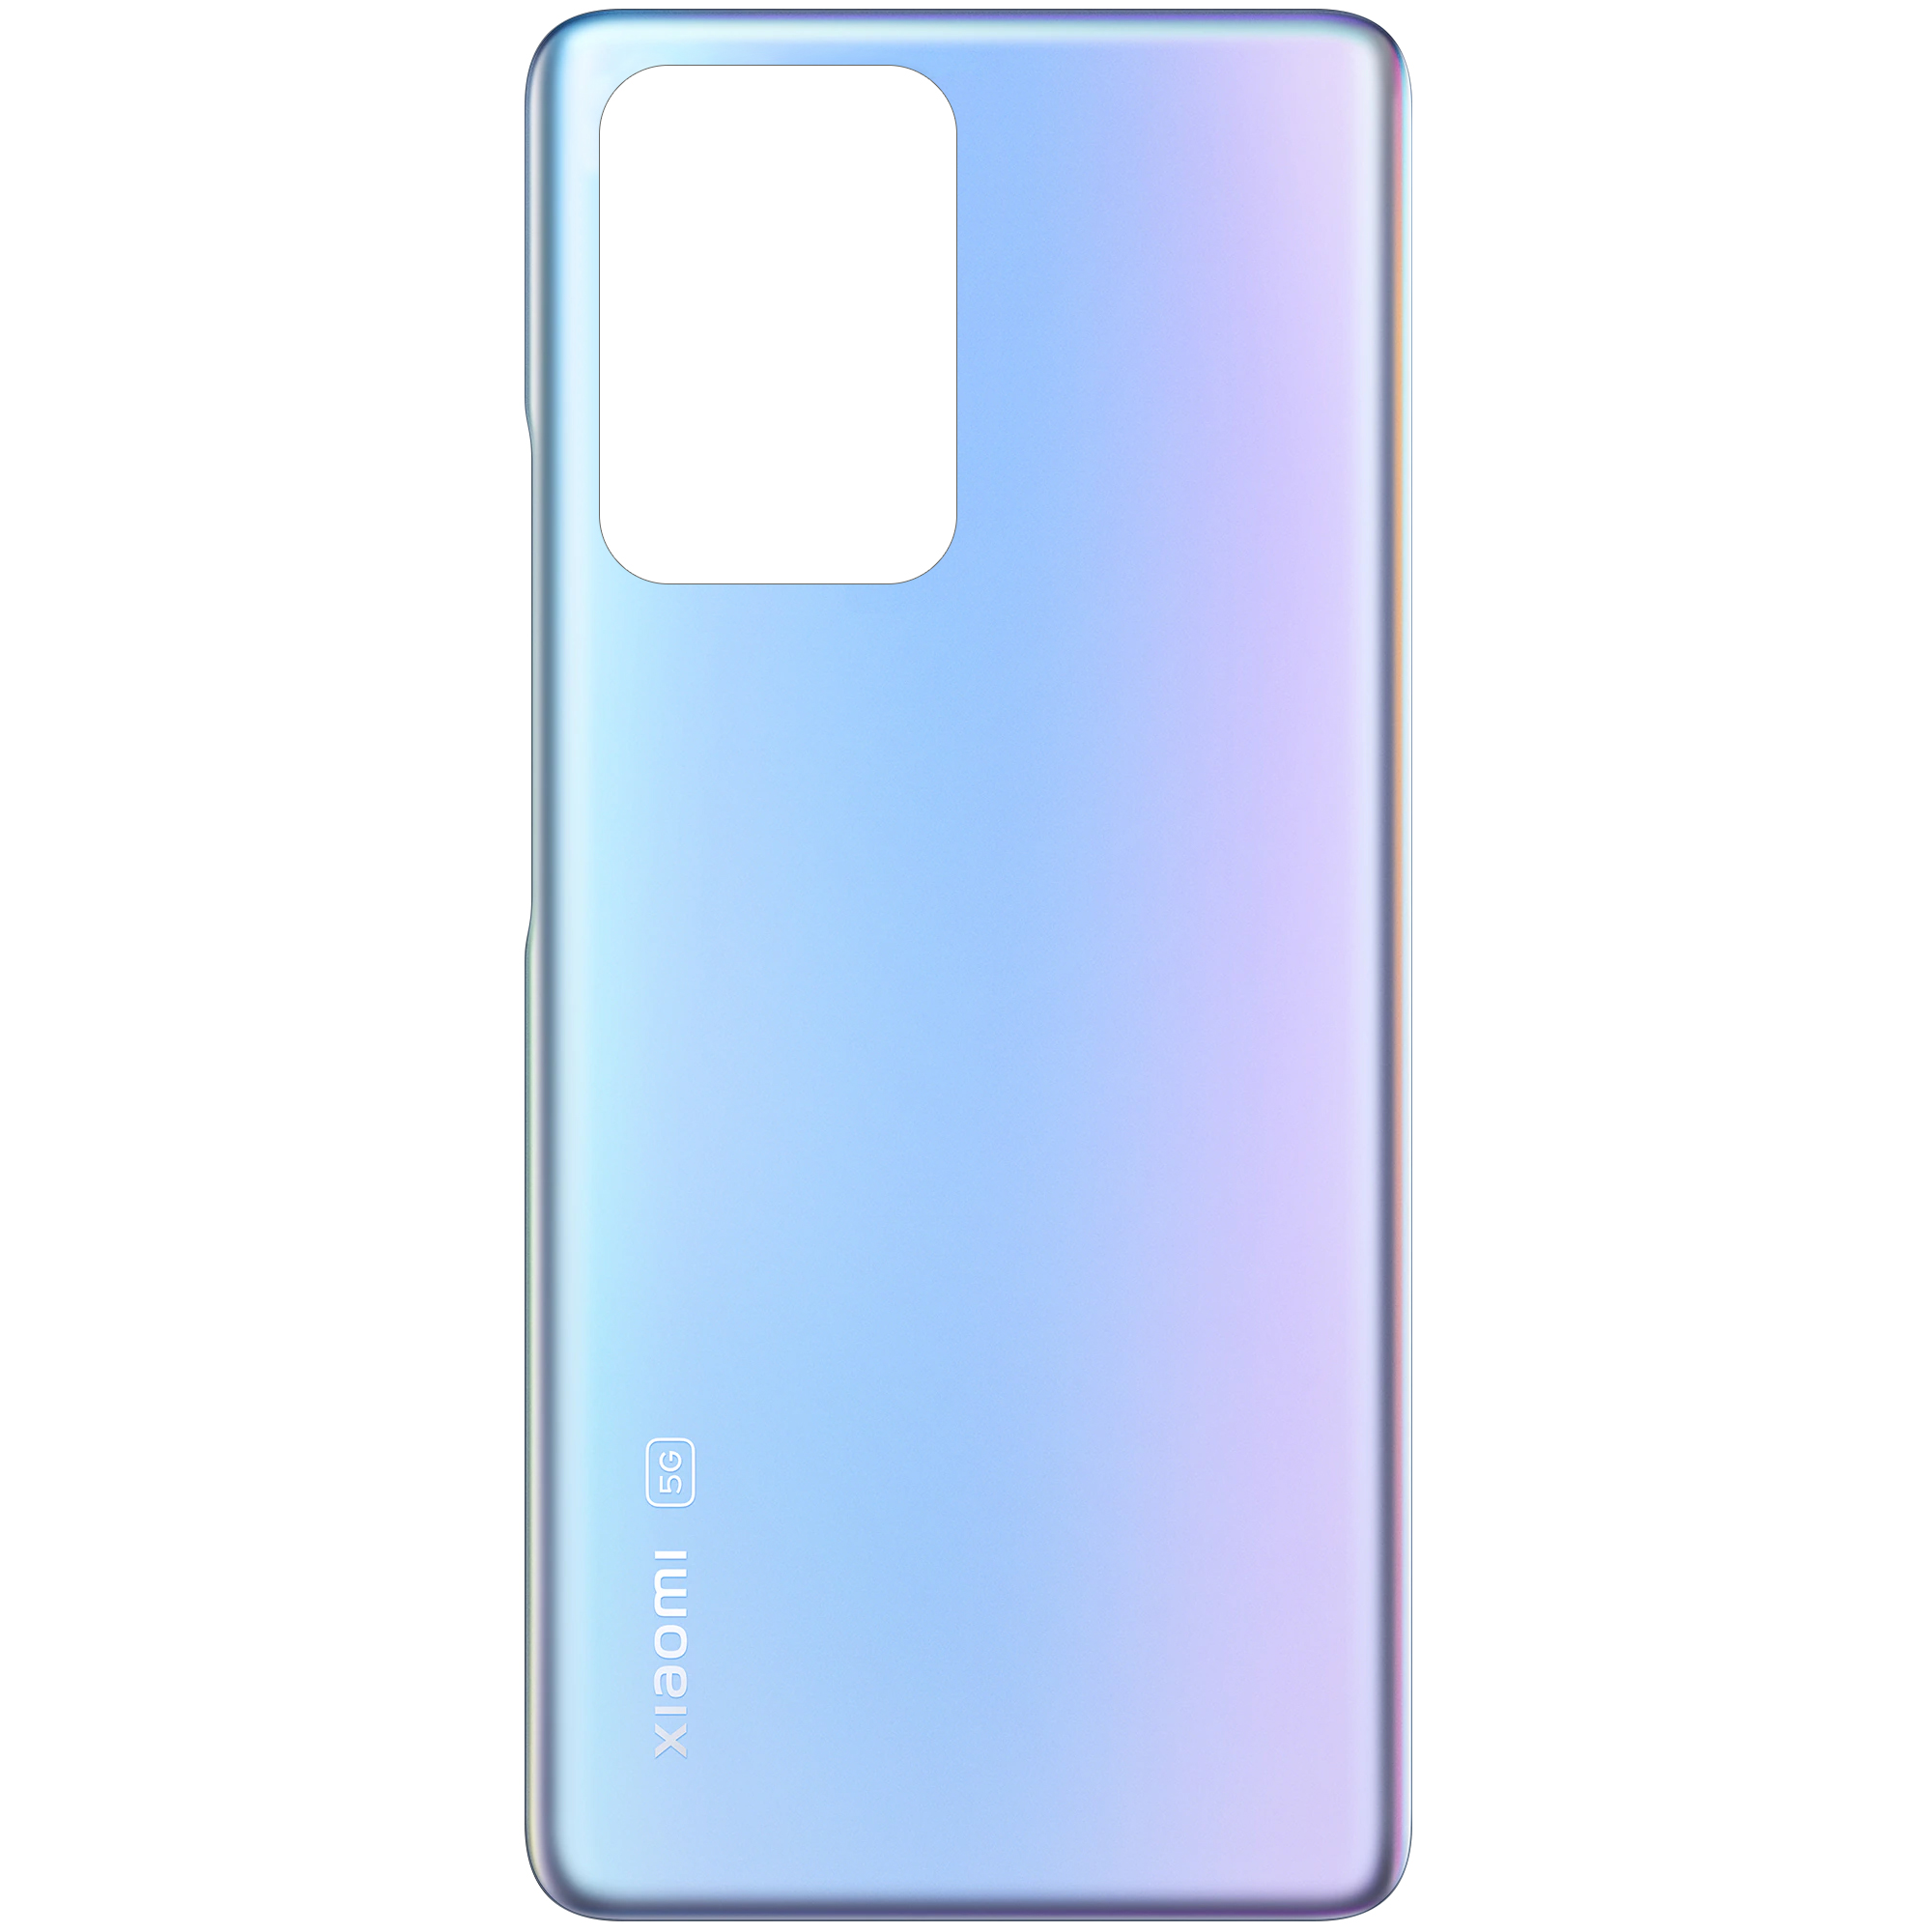 Capac Baterie Xiaomi 11T, Albastru (Celestial Blue), Service Pack 550500017S4J 